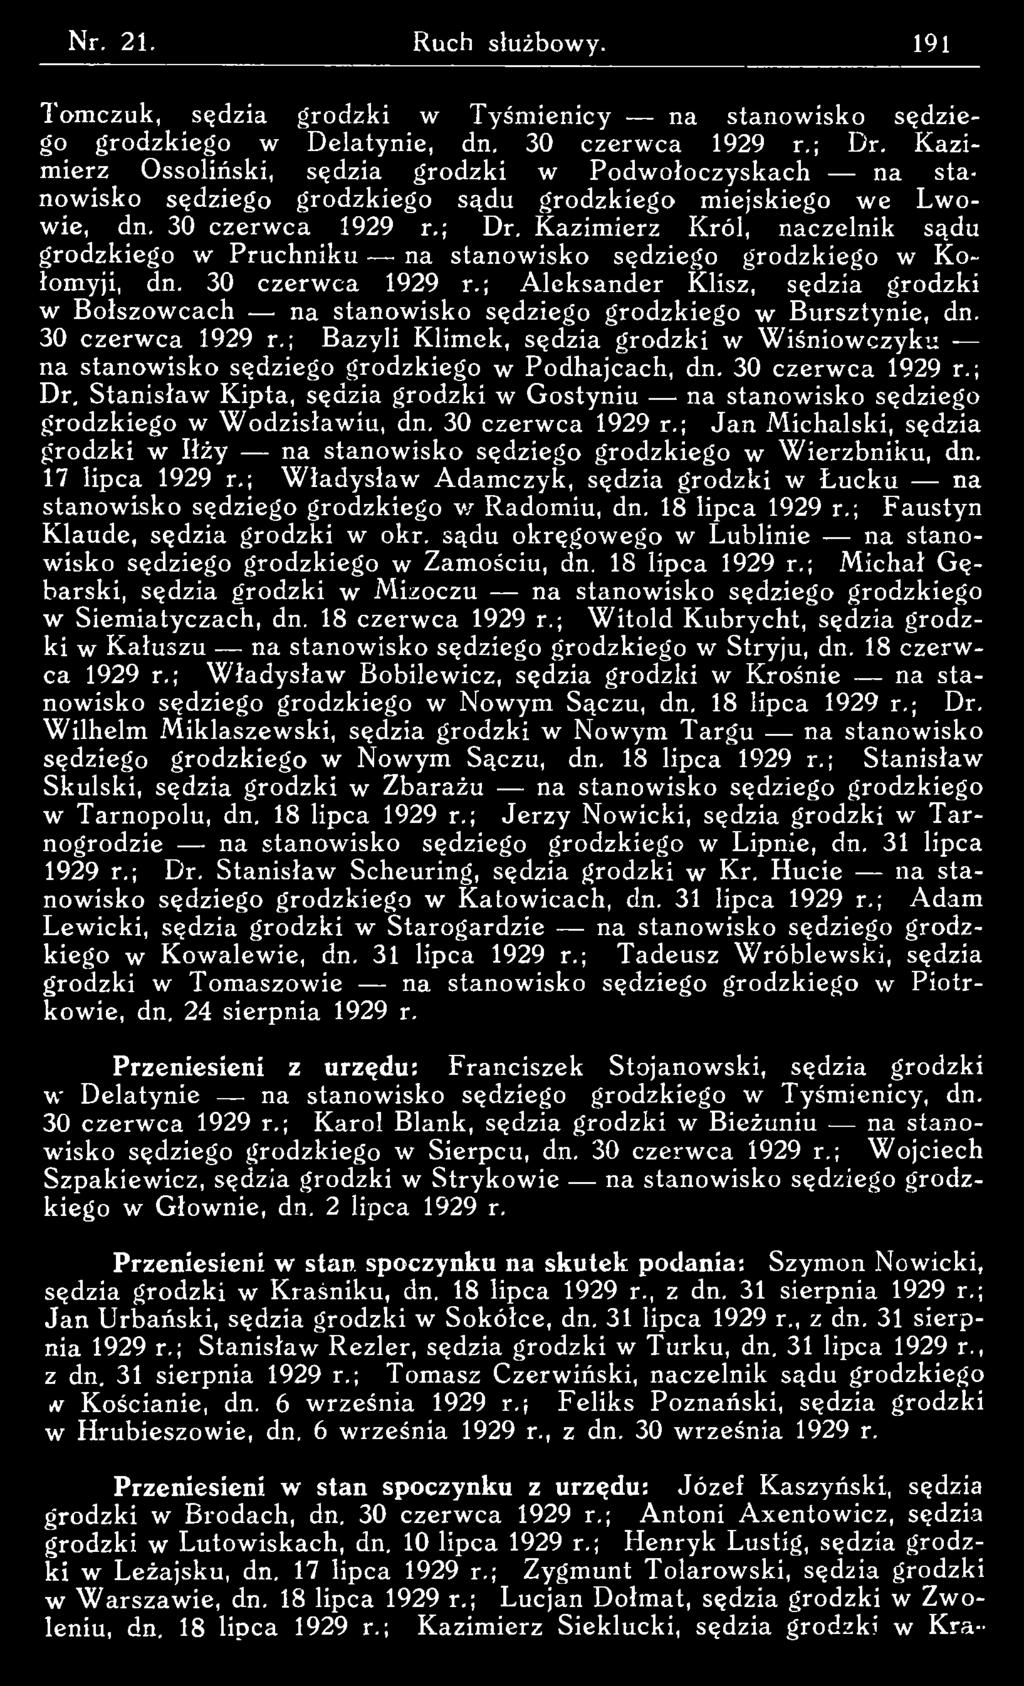 ; Bazyli Klimek, sędzia grodzki w W iśniow czyku na stanowisko sędziego grodzkiego w Podhajcach, dn. 30 czerw ca 1929 r.; Dr.